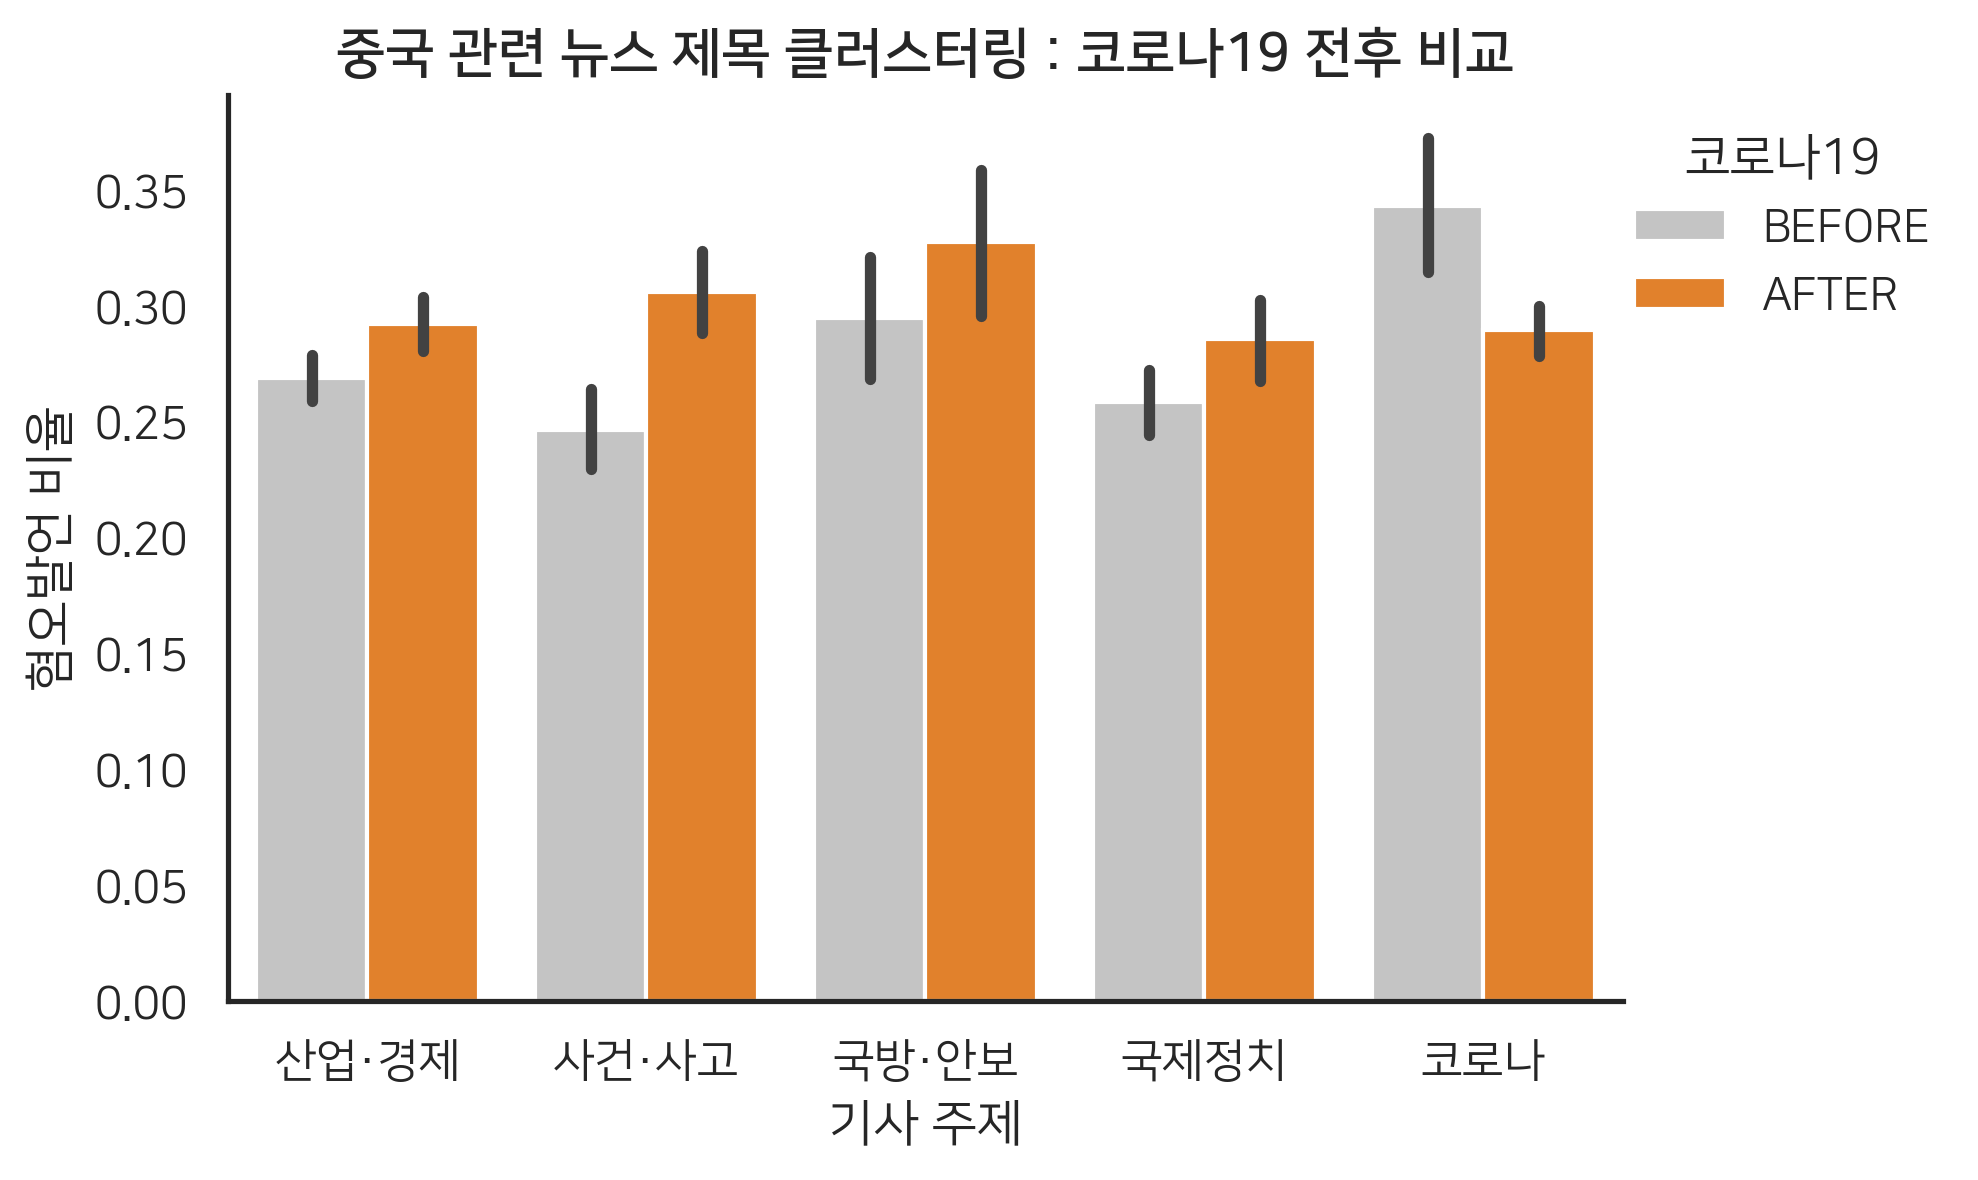 중국 관련 뉴스 제목 클러스터링 : 코로나19 전후 비교